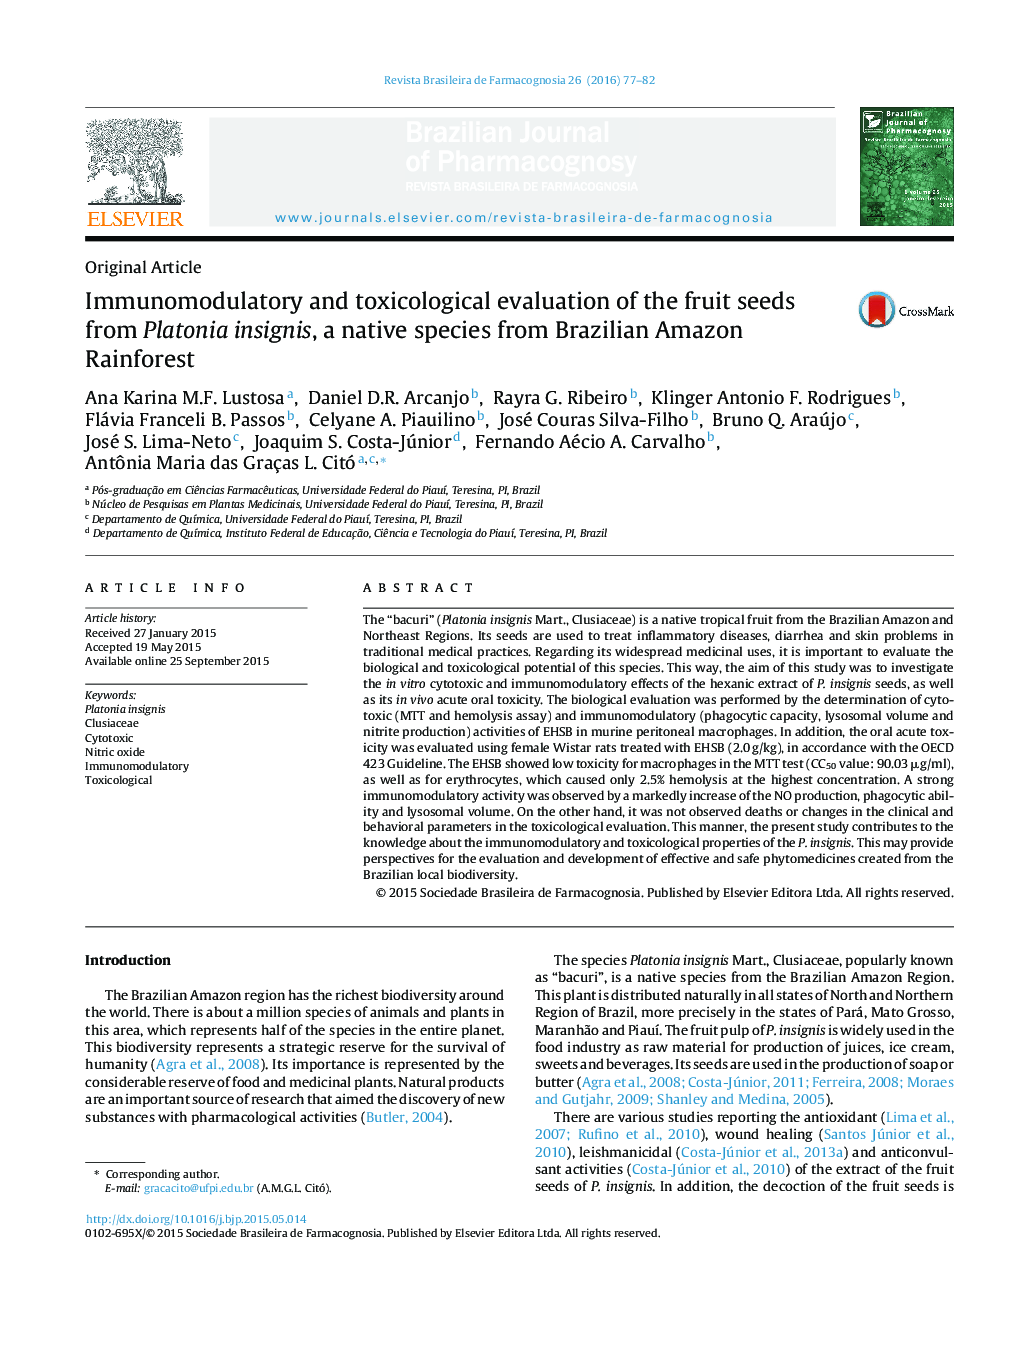 سیستم ایمنی و ارزیابی سم شناسی از دانه های میوه از Platonia insignis، یک گونه بومی از برزیل آمازون